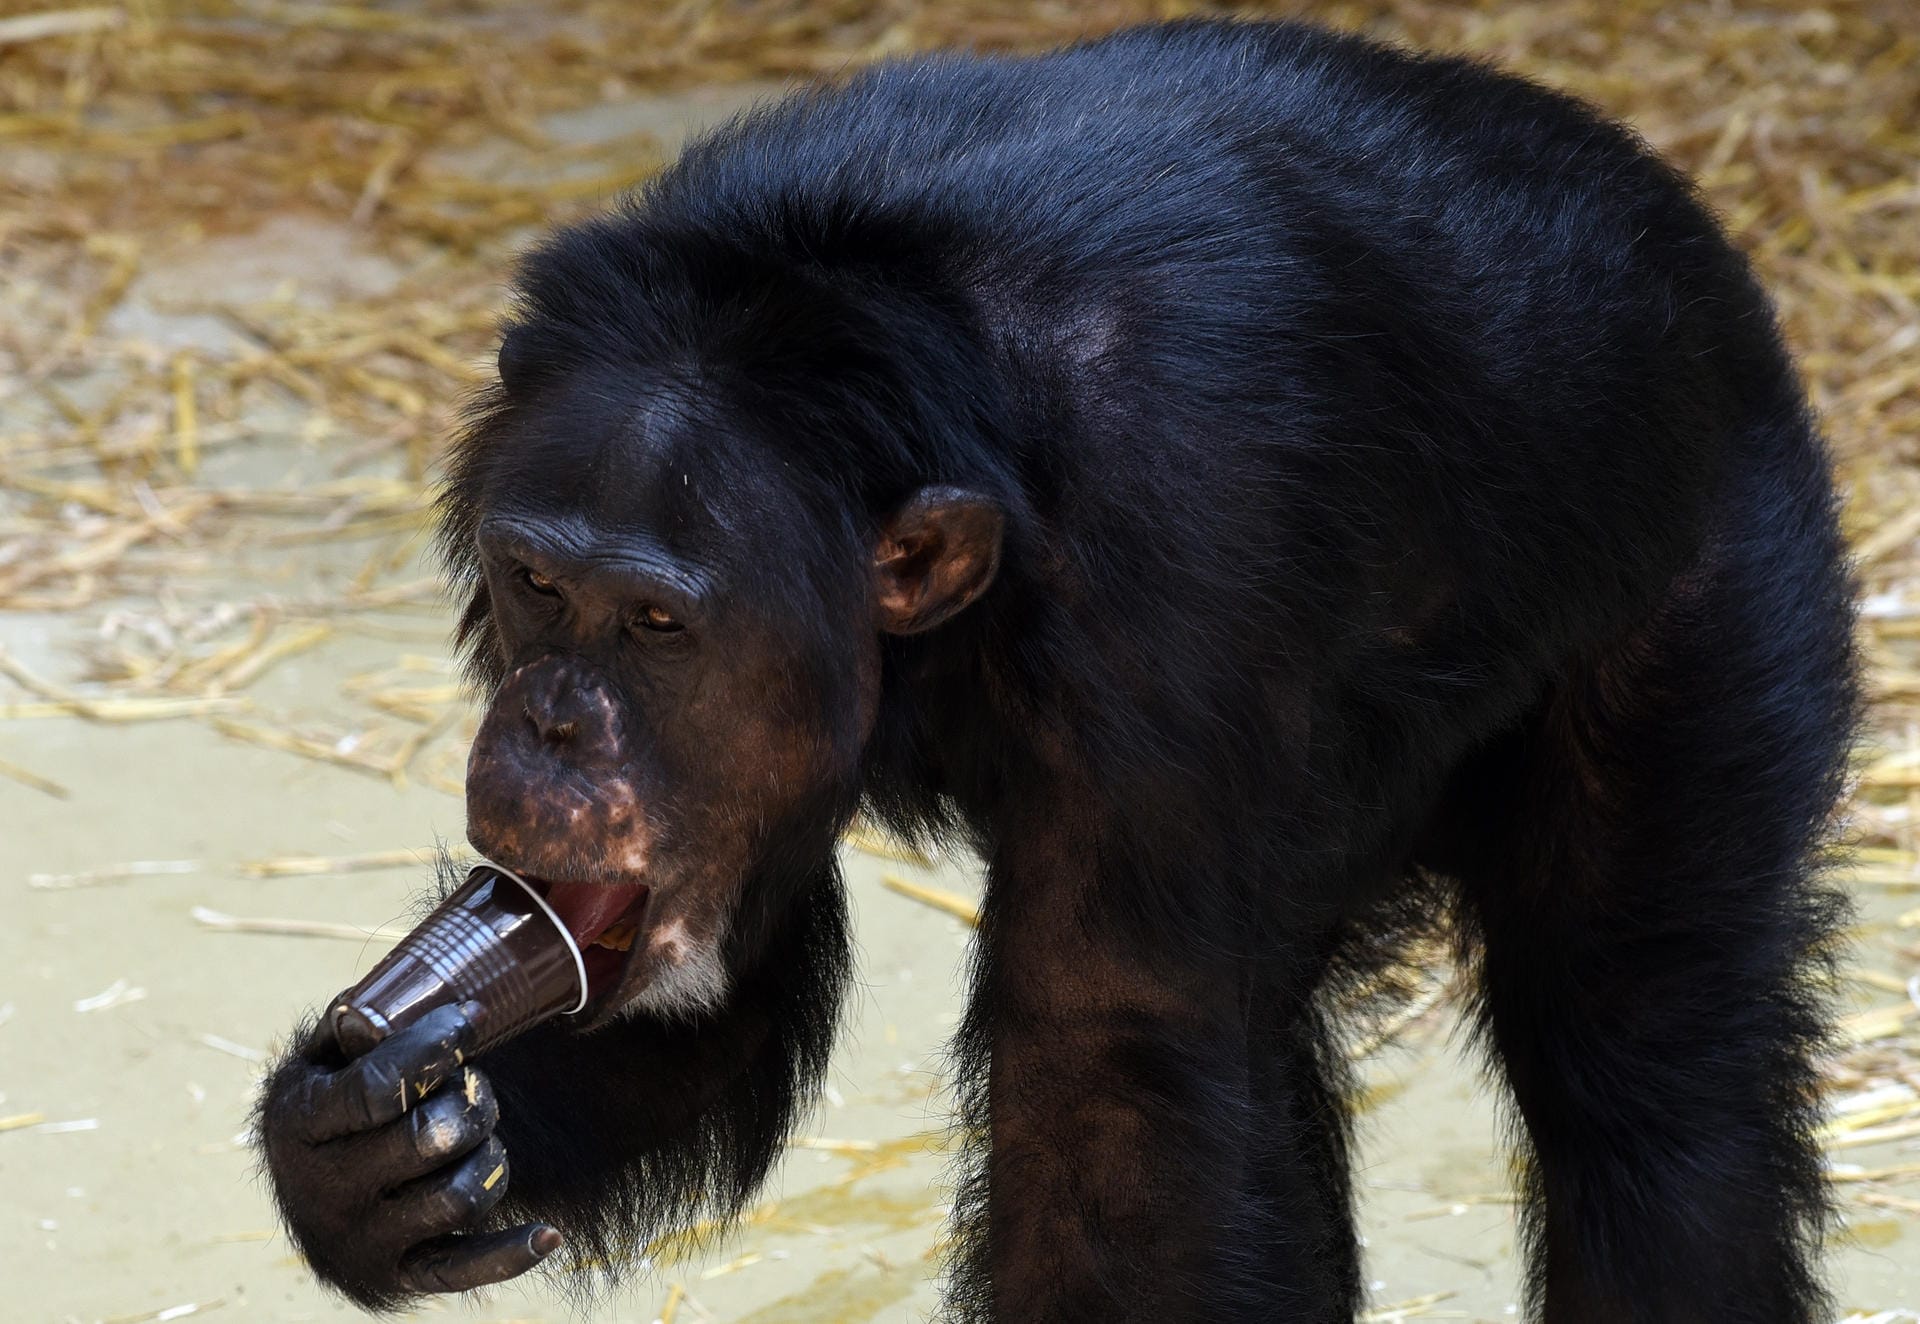 Das Schimpansen-Männchen Scharly schlürft am 03.07.2015 in seinem Gehege im Zoo in Krefeld (Nordrhein-Westfalen) "Affeneis" aus eingefrorenem Multivitaminsaft.